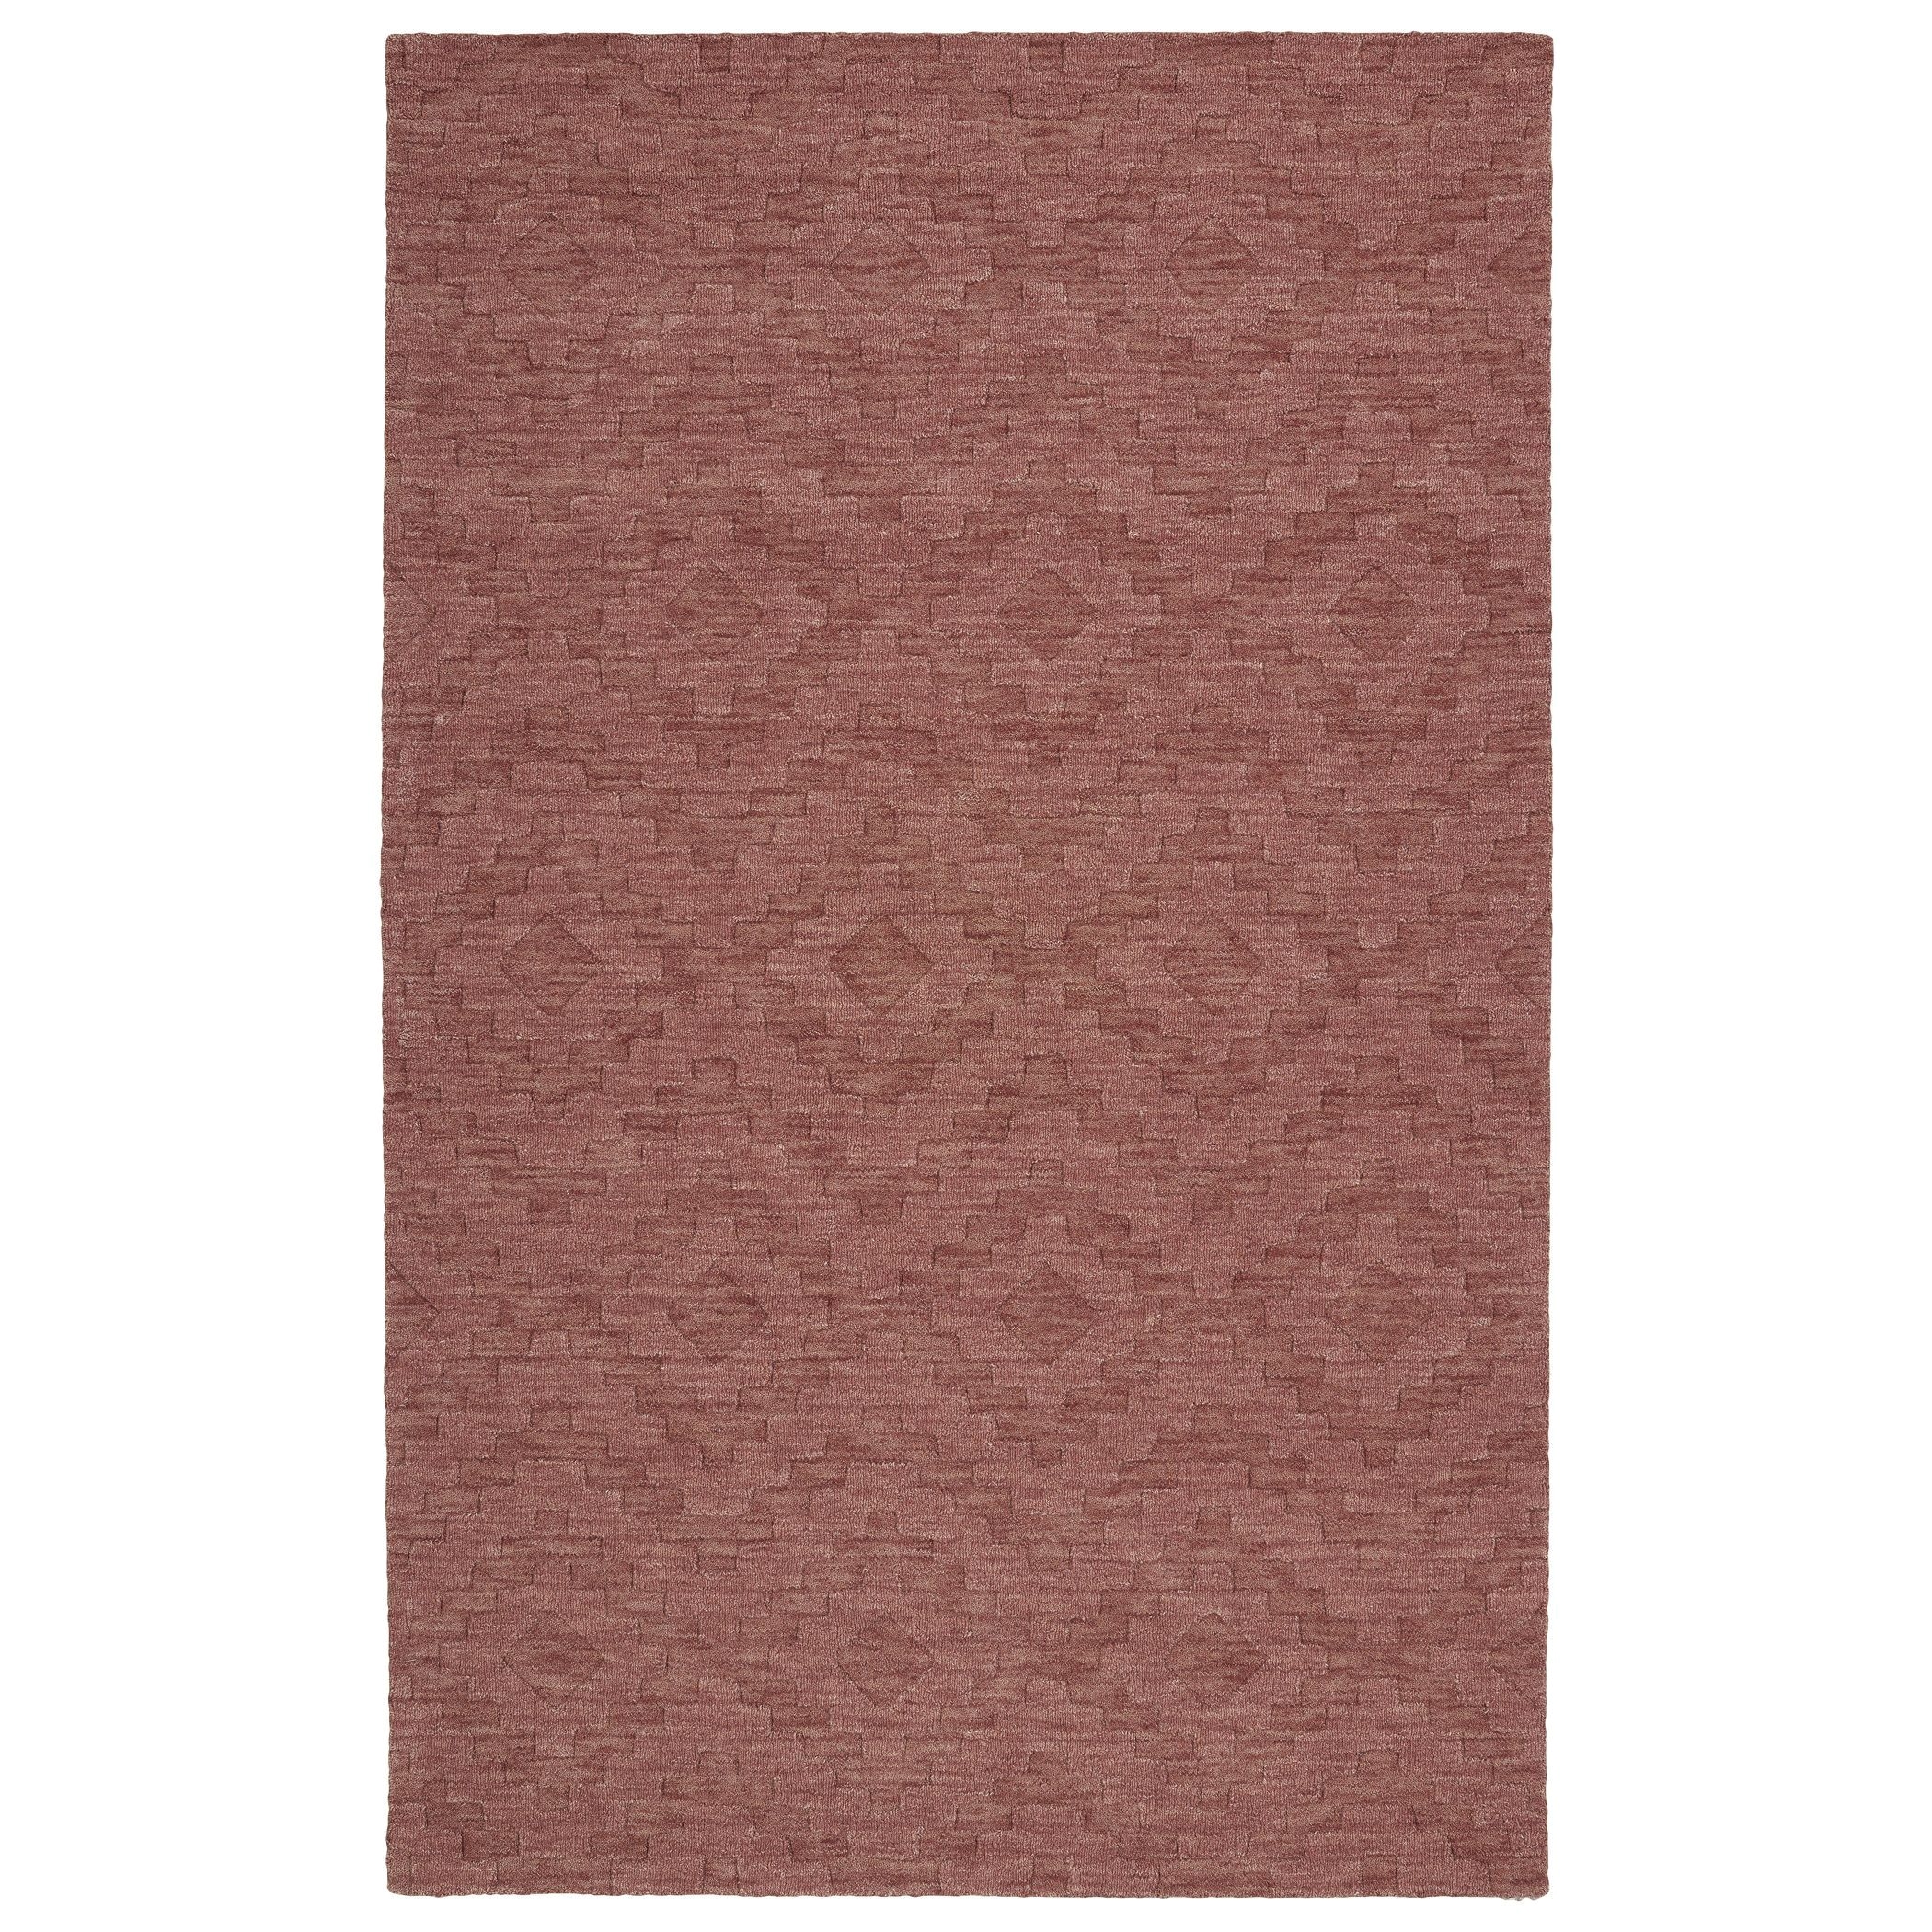 Blush Pink Rug Target Kaleen Rugs Trends Rose Phoenix Wool Rug 8 0 X 11 0 8 0 X 11 0